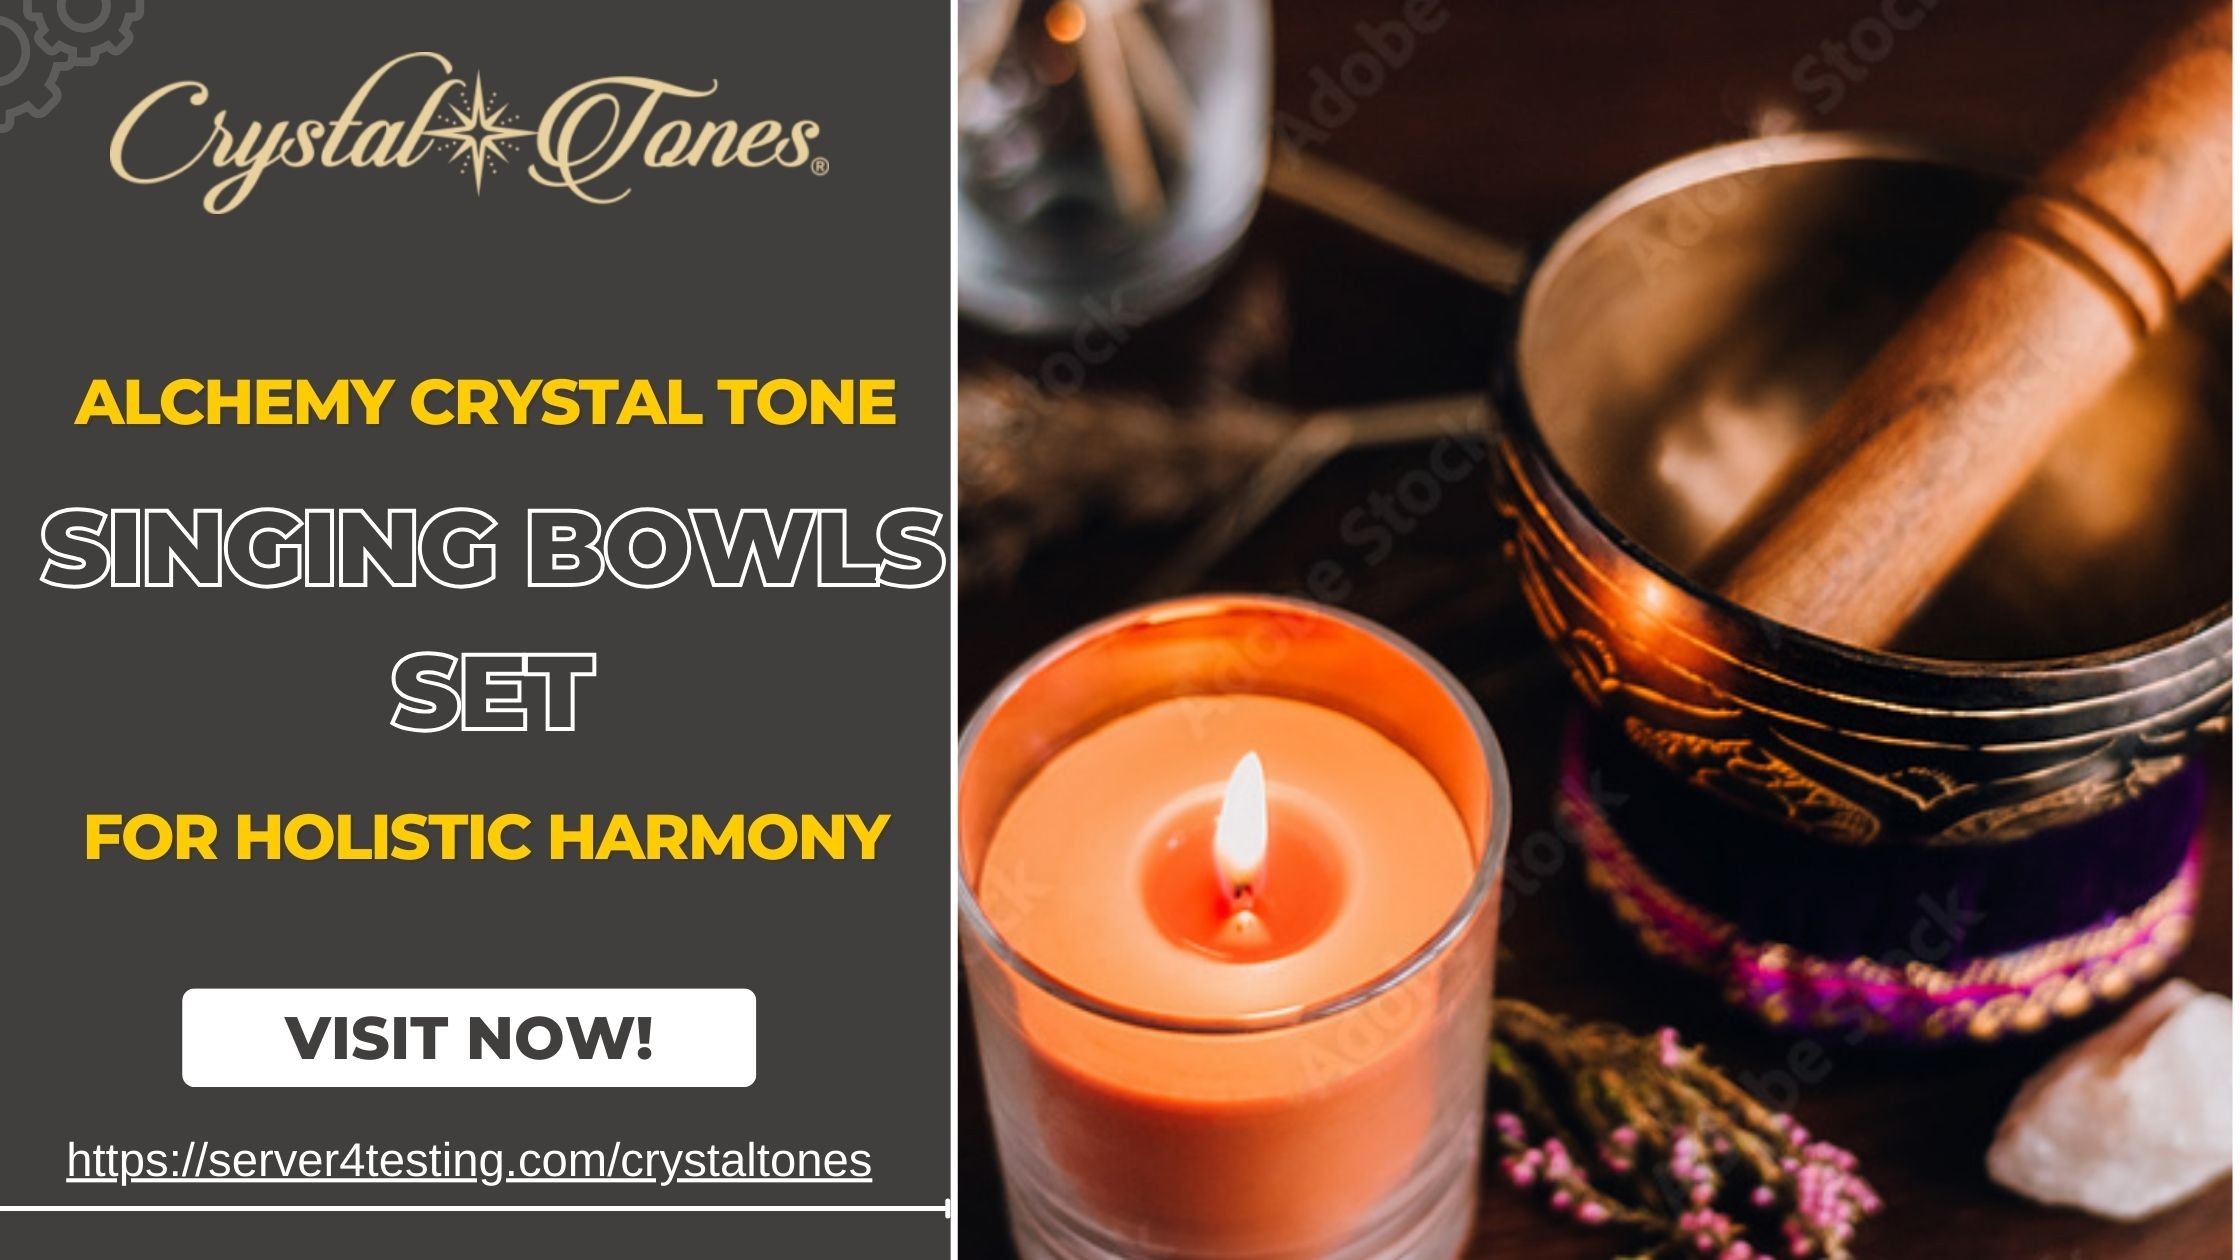 Alchemy Crystal Tone Singing Bowls Set for Holistic Harmony